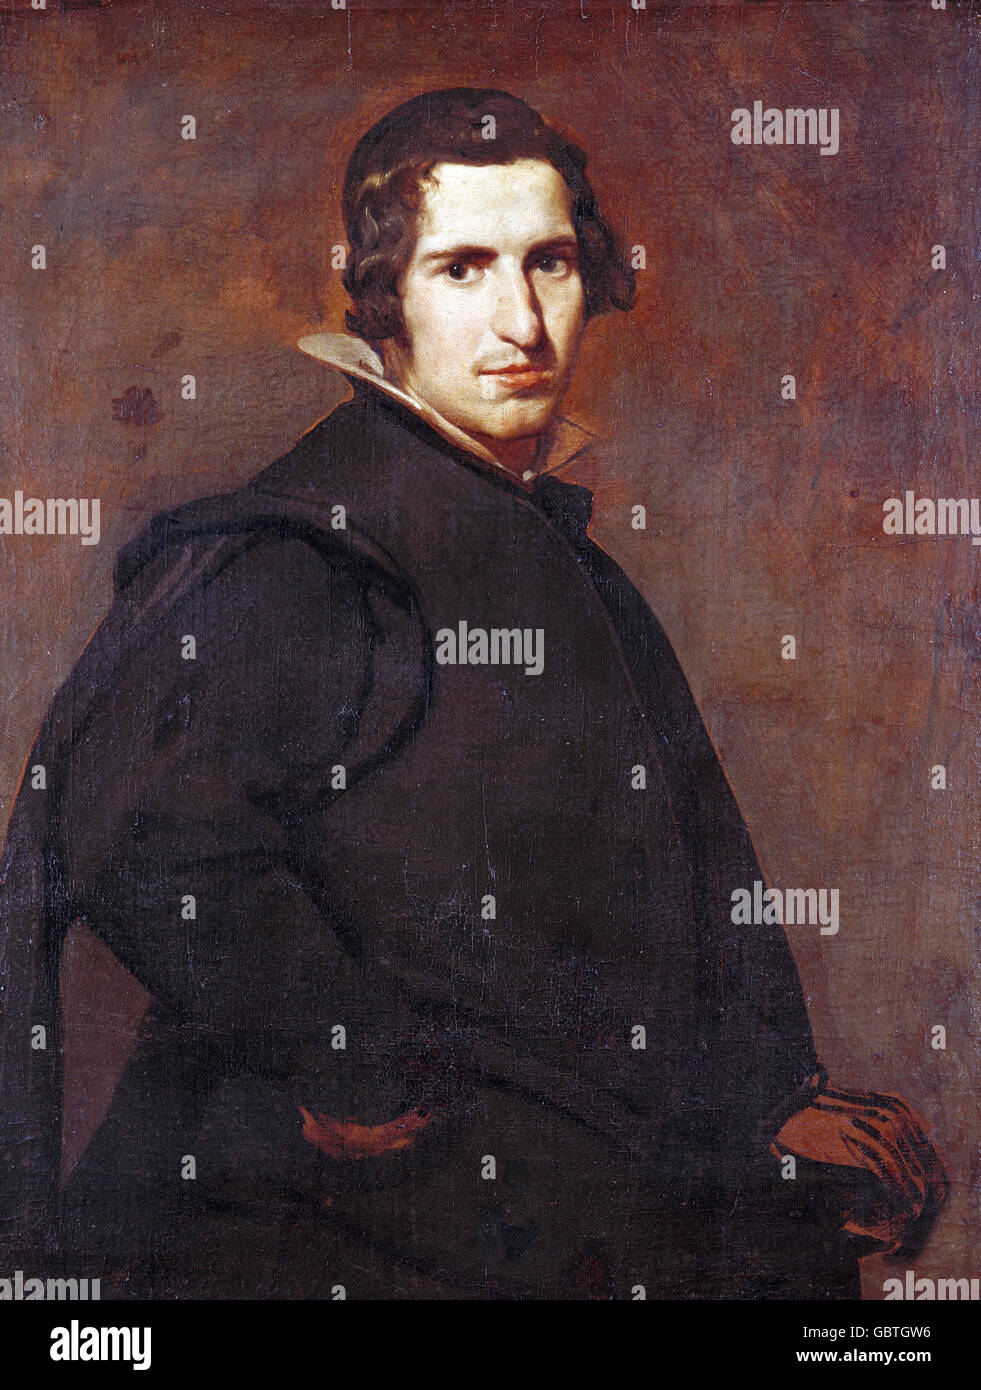 Beaux-arts, Velazquez, Diego Rodriguez de Silva y (1599 - 1660), peinture 'Jeune homme' espagnol, vers 1629, huile sur toile, 89,2 cm x 69,5 cm, Alte Pinakothek, Munich, Banque D'Images